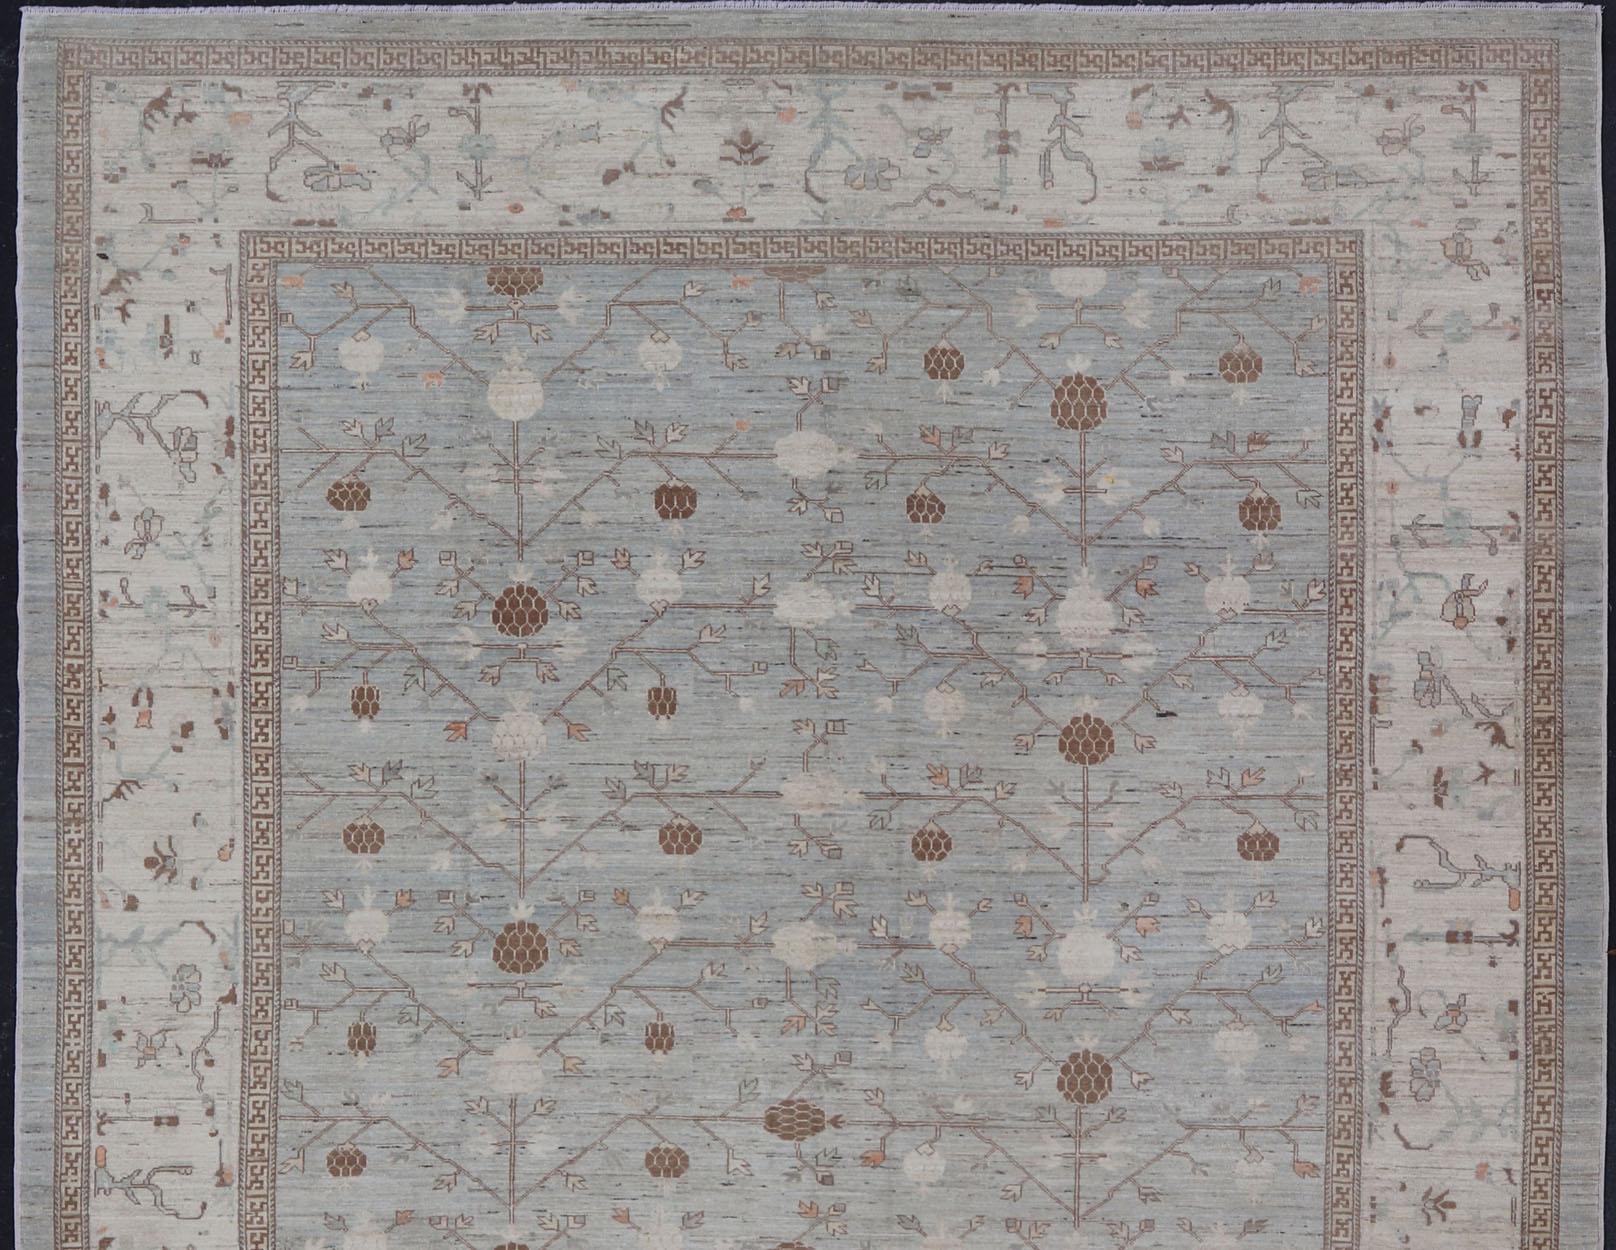 Großer Khotan-Teppich mit Granatapfelmuster. Keivan, gewebter Kunstteppich AFG-36096, Herkunftsland / Art: Afghanistan / Khotan

Khotan zeichnet sich durch ein Granatapfelmuster aus, das von einem sich wiederholenden Muster in der Bordüre